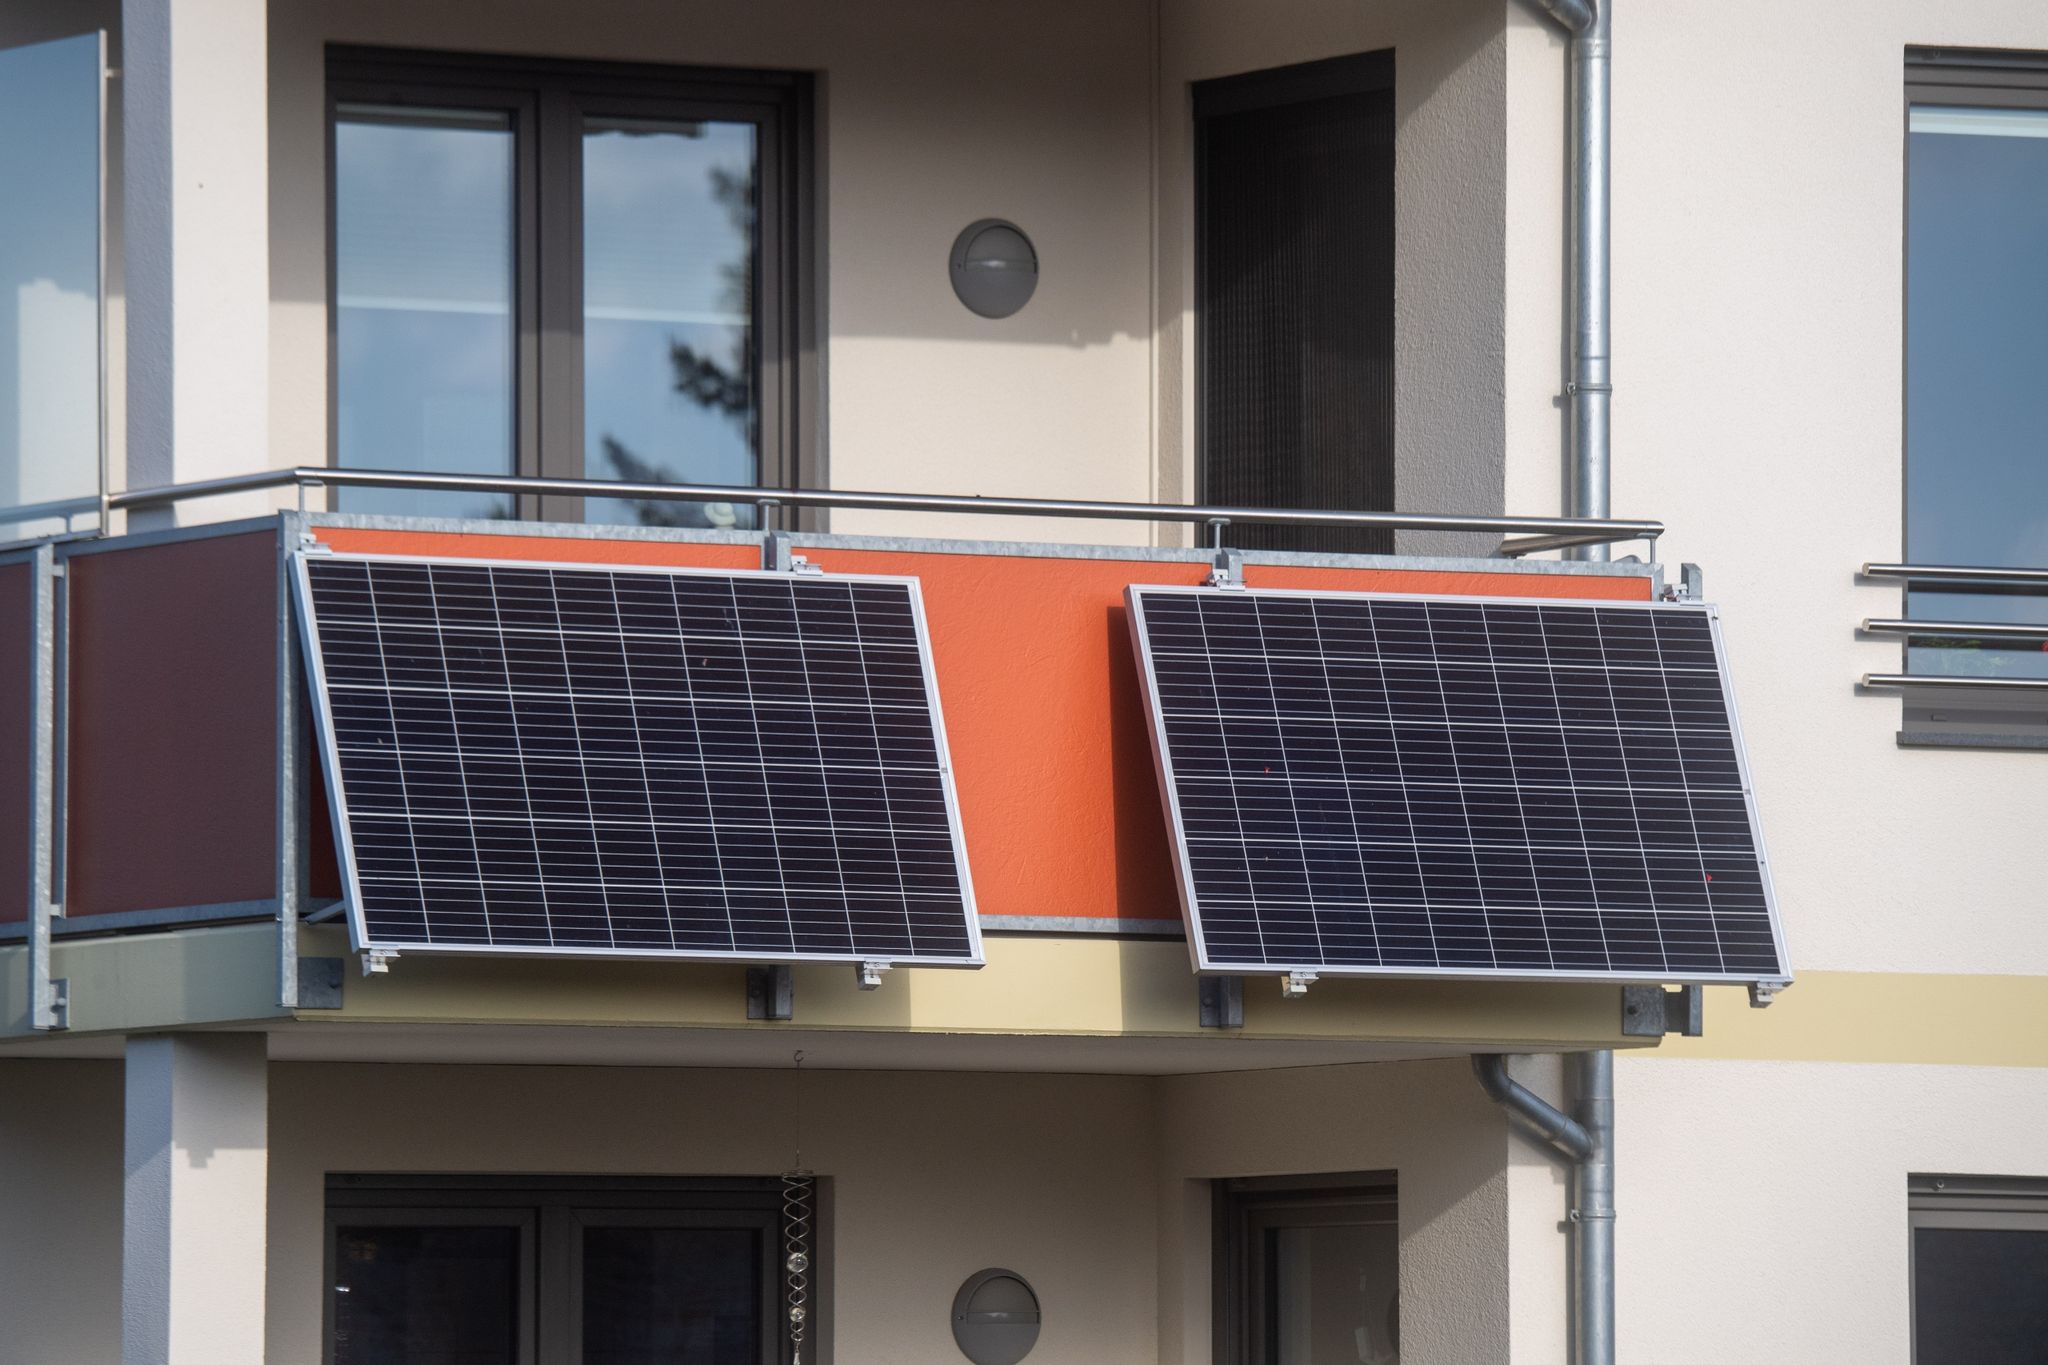 Solarmodule für ein sogenanntes Balkonkraftwerk hängen an einem Balkon.